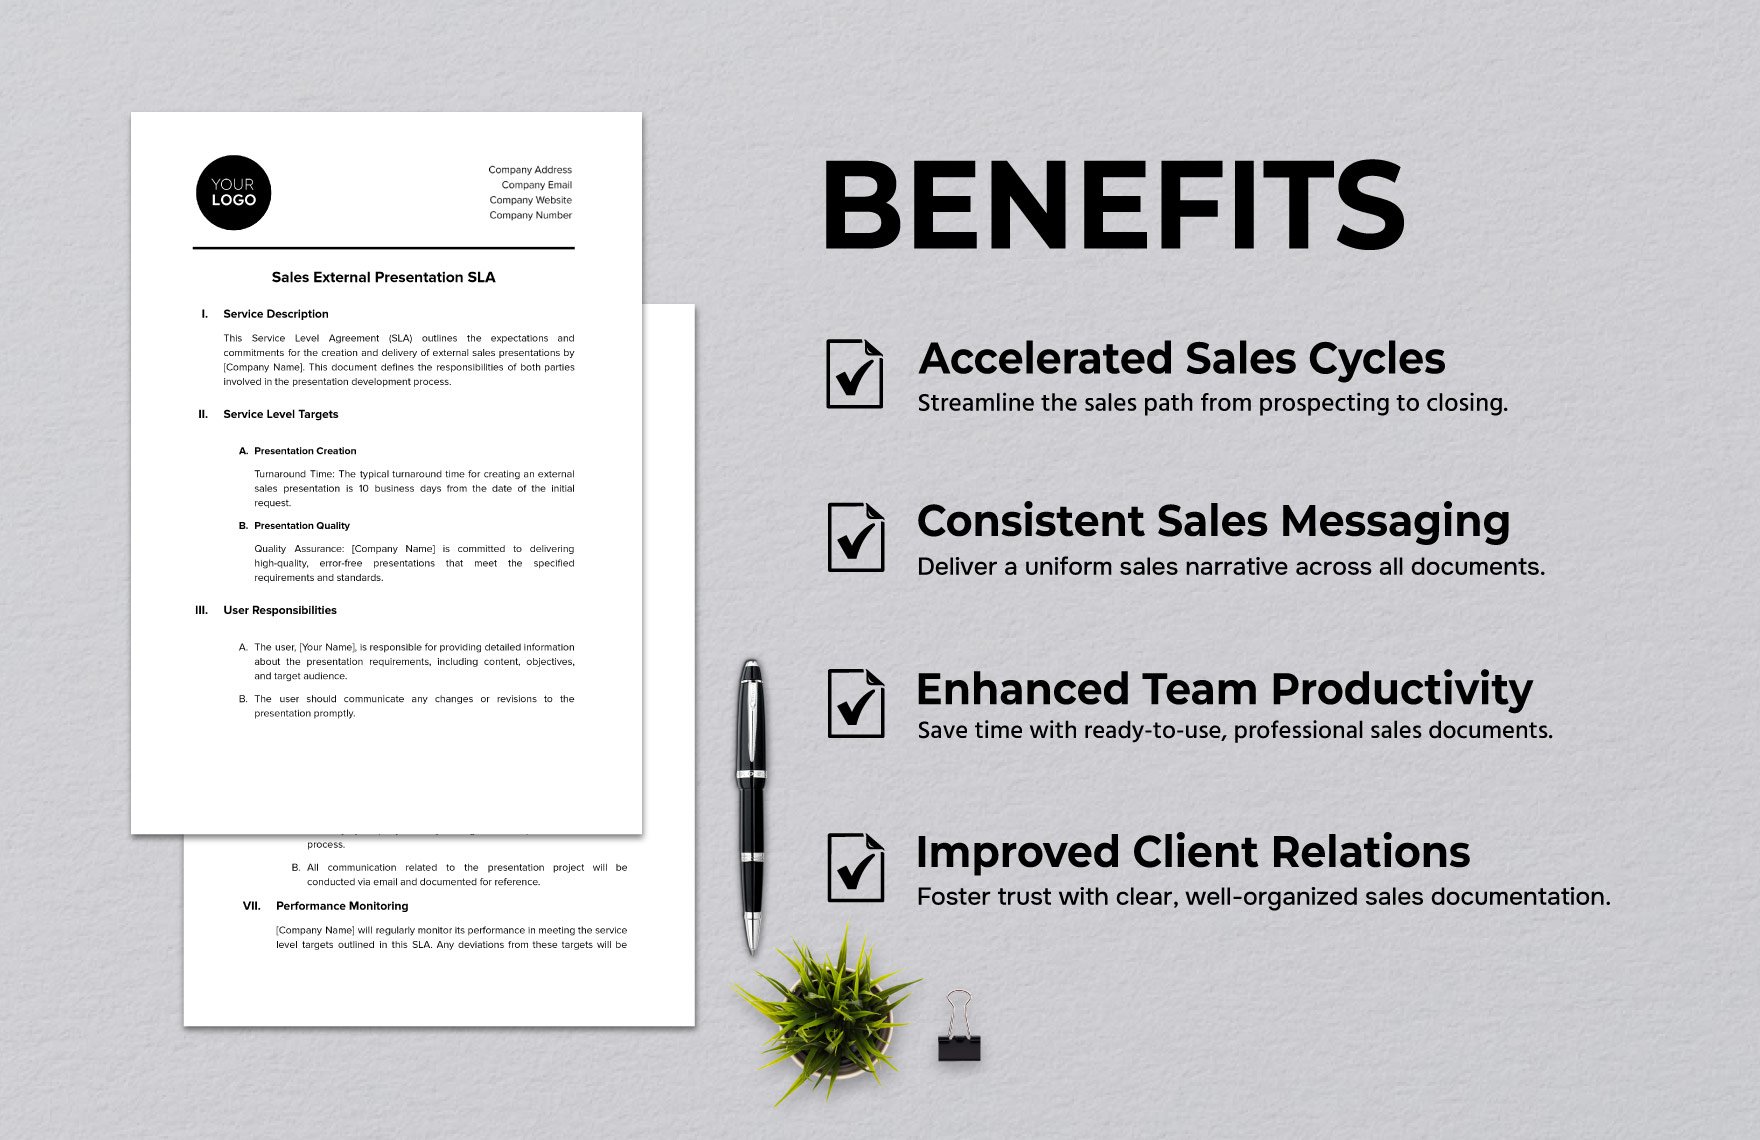 Sales External Presentation SLA Template